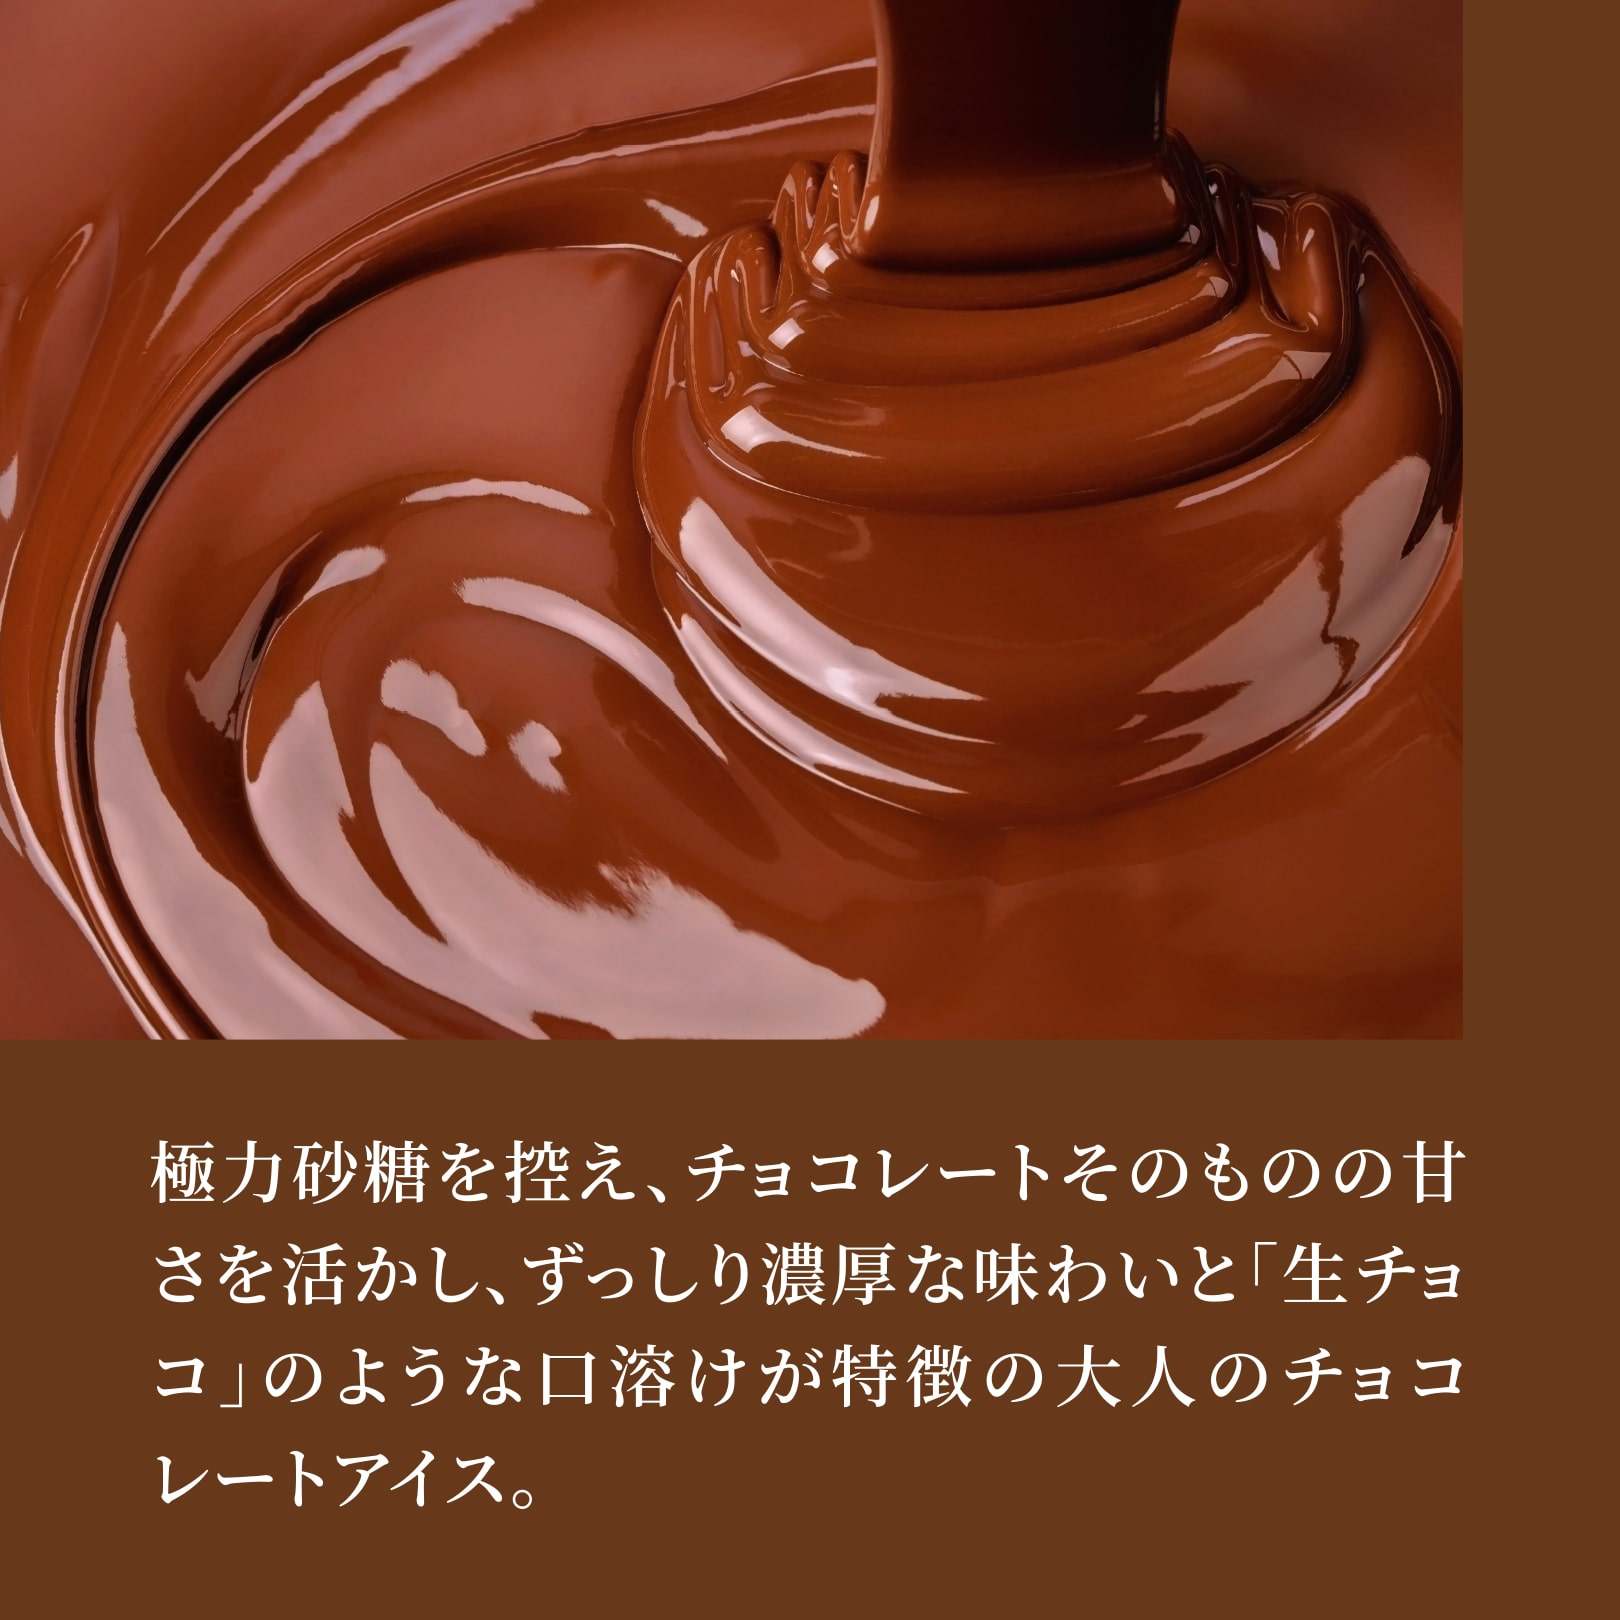 極力砂糖を控え、チョコレートそのものの甘さを活かし、ずっしり濃厚な味わいと「生チョコ」のような口溶けが特徴の大人のチョコレートアイス。